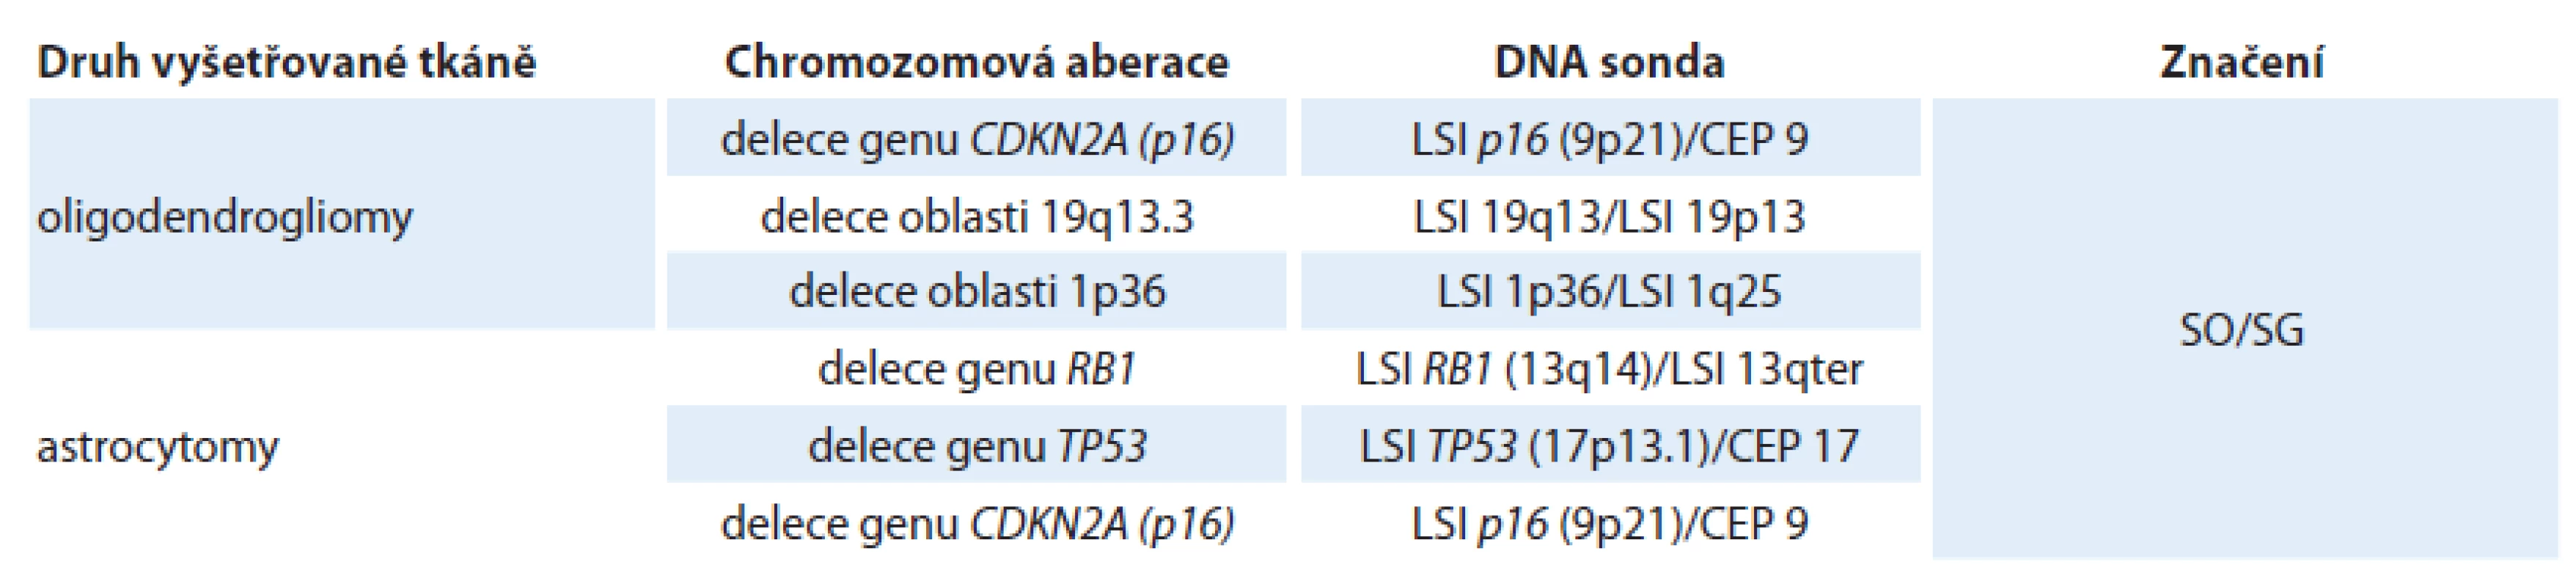 Přehled DNA sond používaných u jednotlivých subtypů k záchytu nejčastějších chromozomových aberací.